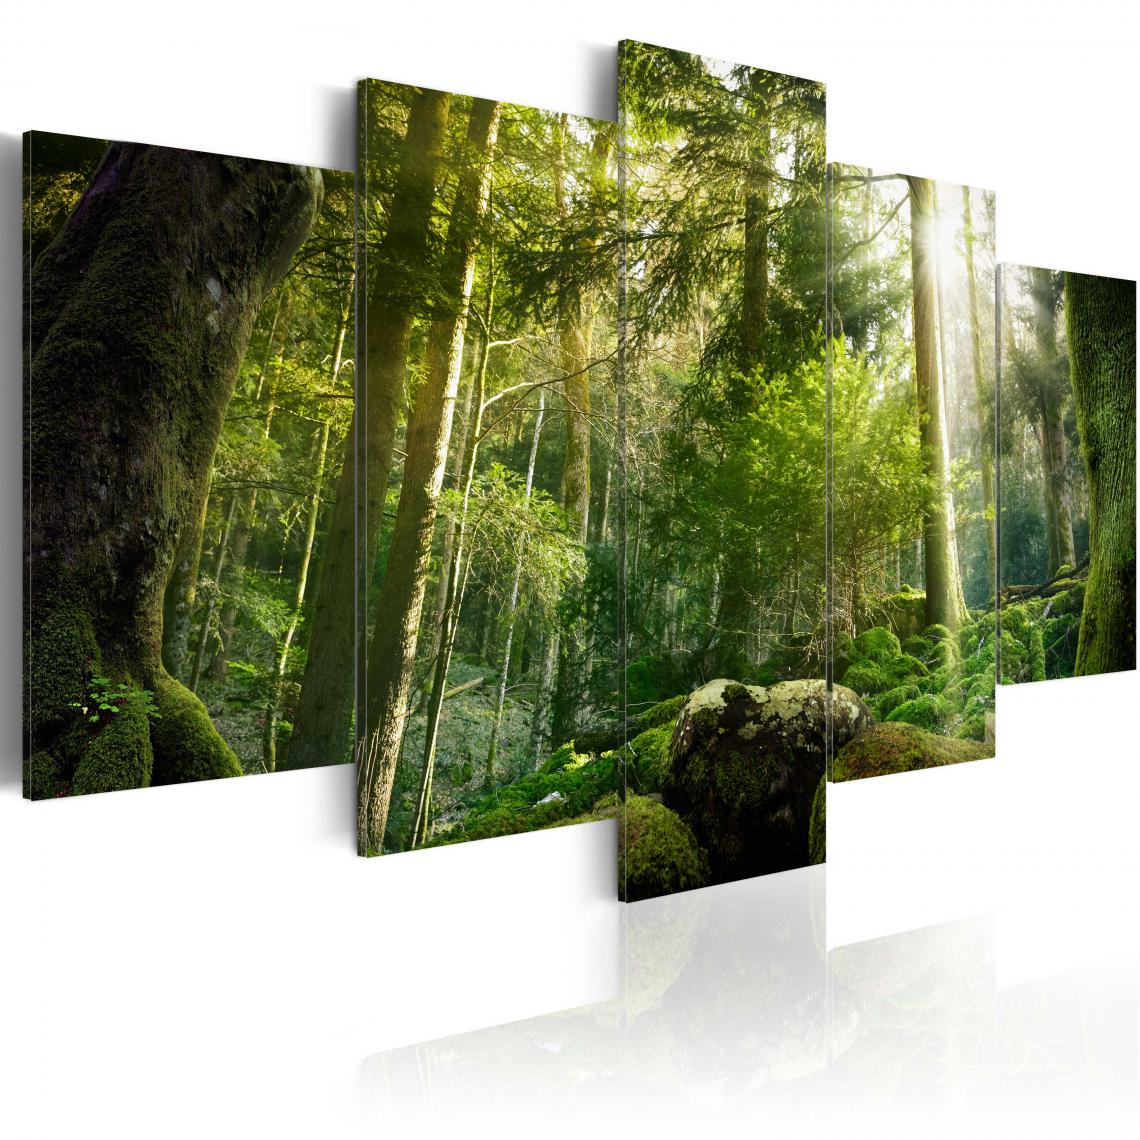 Decoshop26 - Tableau sur toile en 5 panneaux décoration murale image imprimée cadre en bois à suspendre Beauté de la forêt 200x100 cm 11_0006220 - Tableaux, peintures